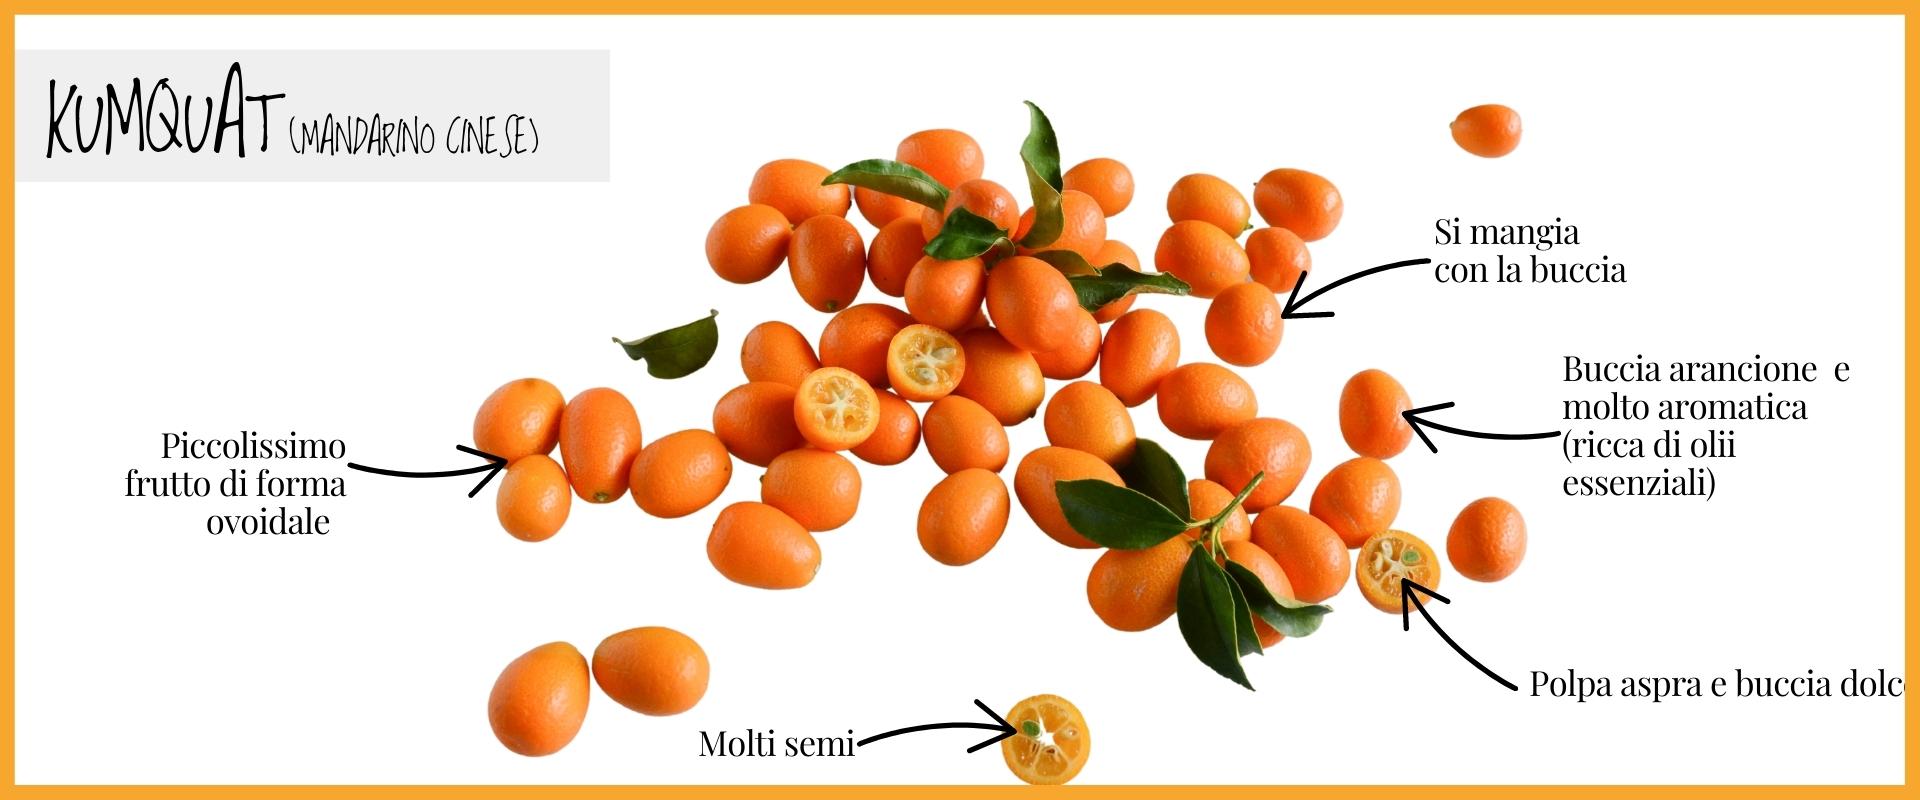 Kumquat: origini, caratteristiche e proprietà